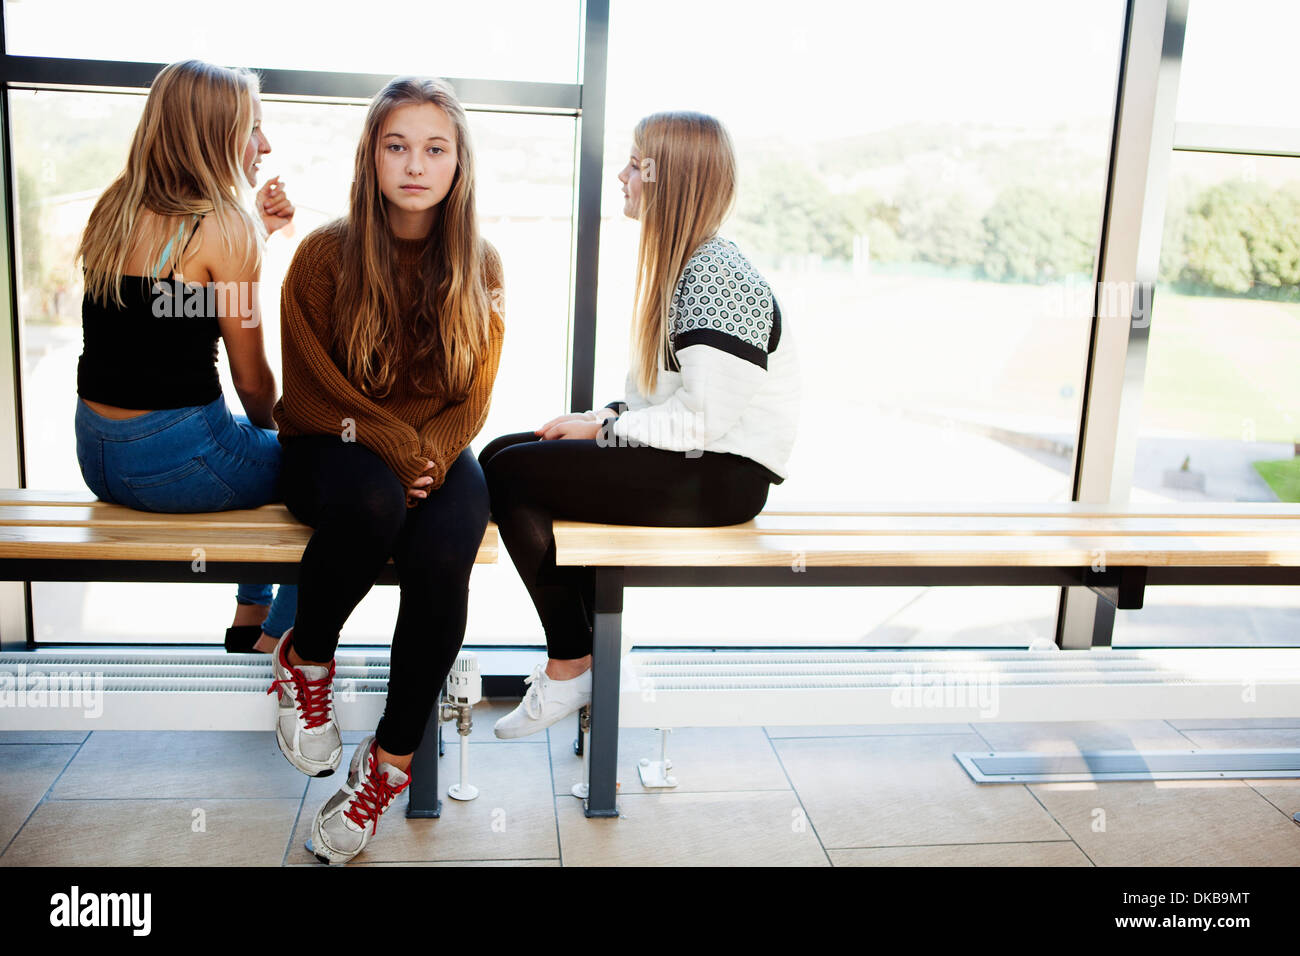 Isolated teenage schoolgirl in corridor Stock Photo